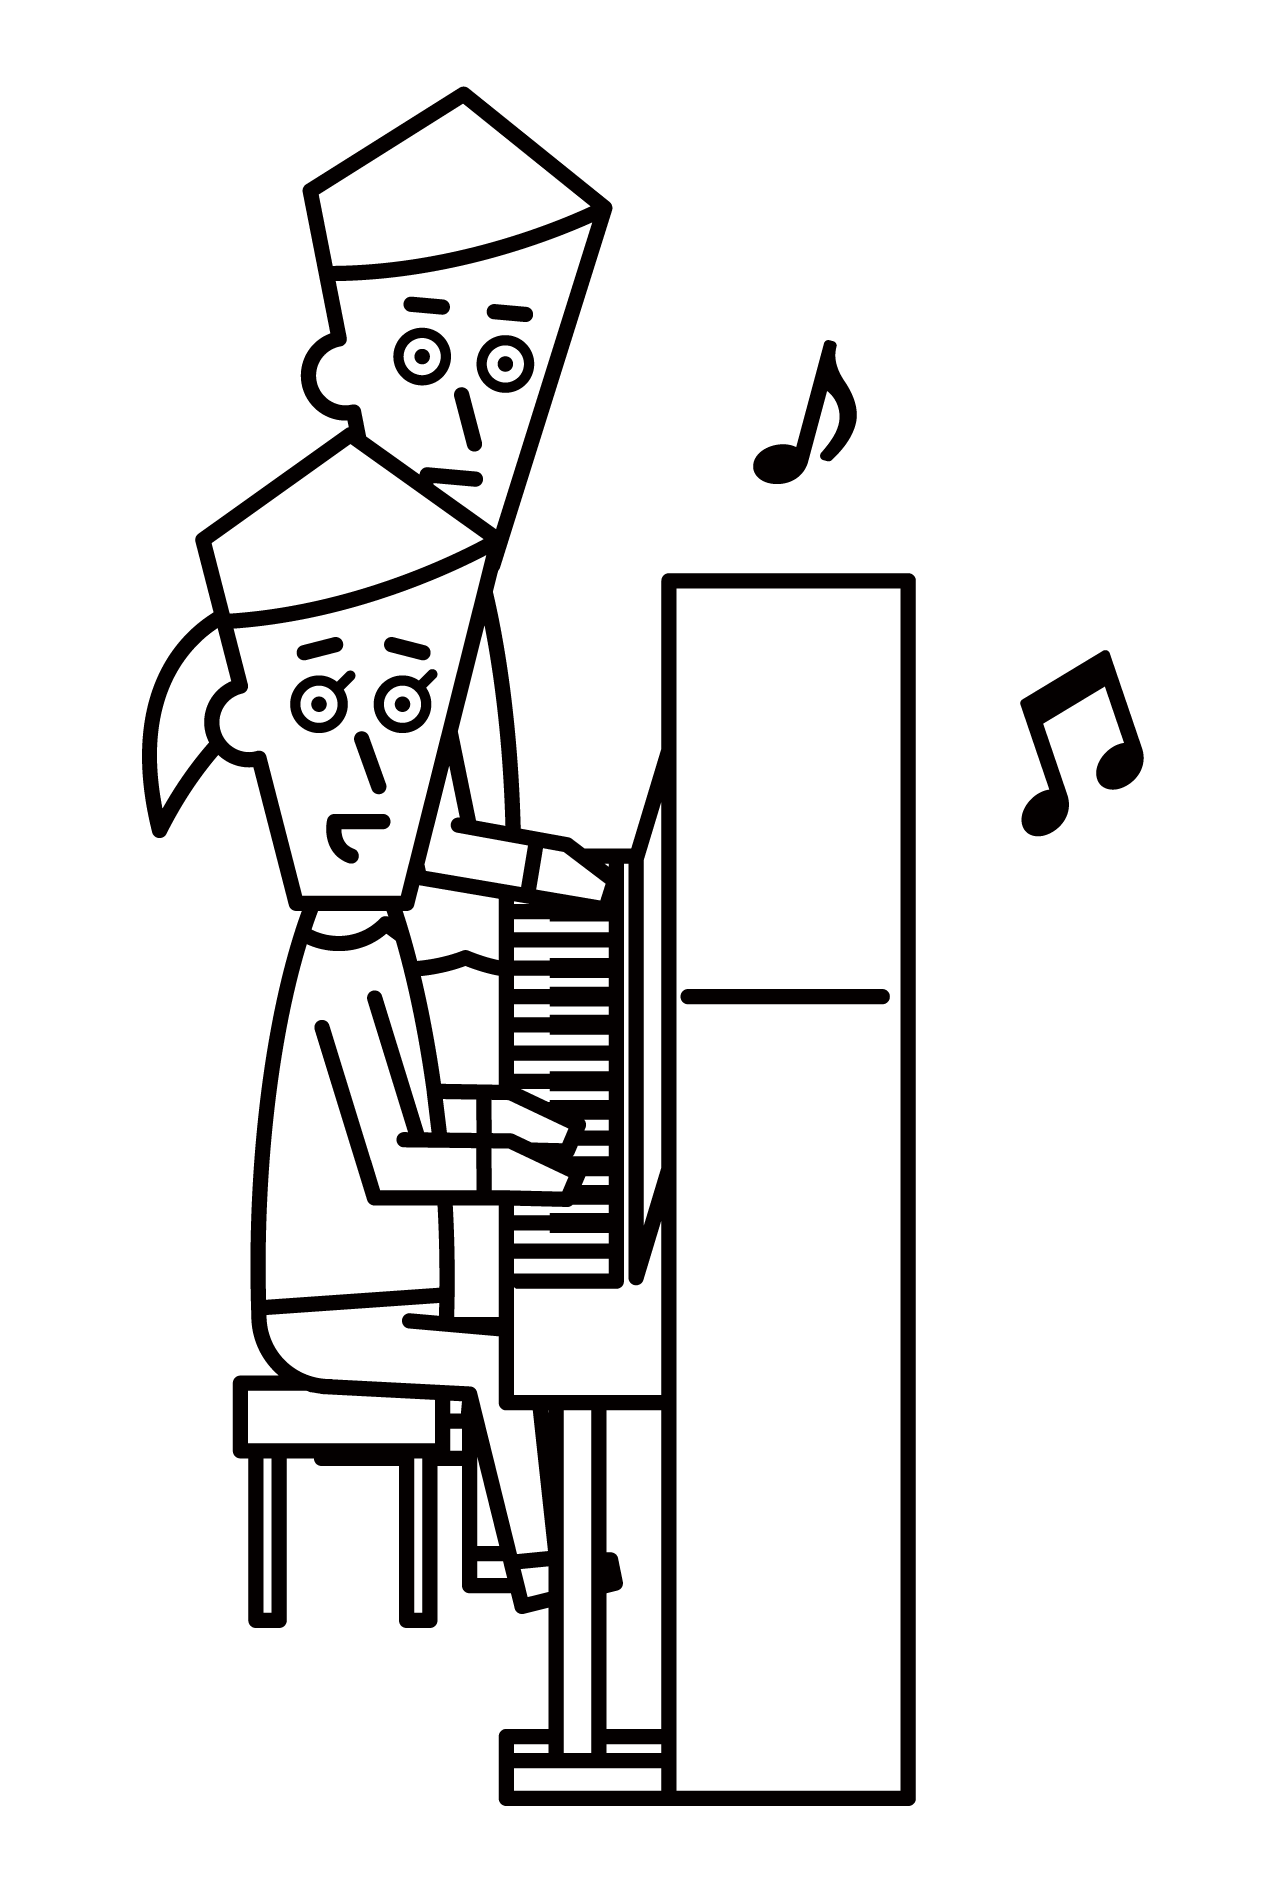 鋼琴教練(男性)插圖